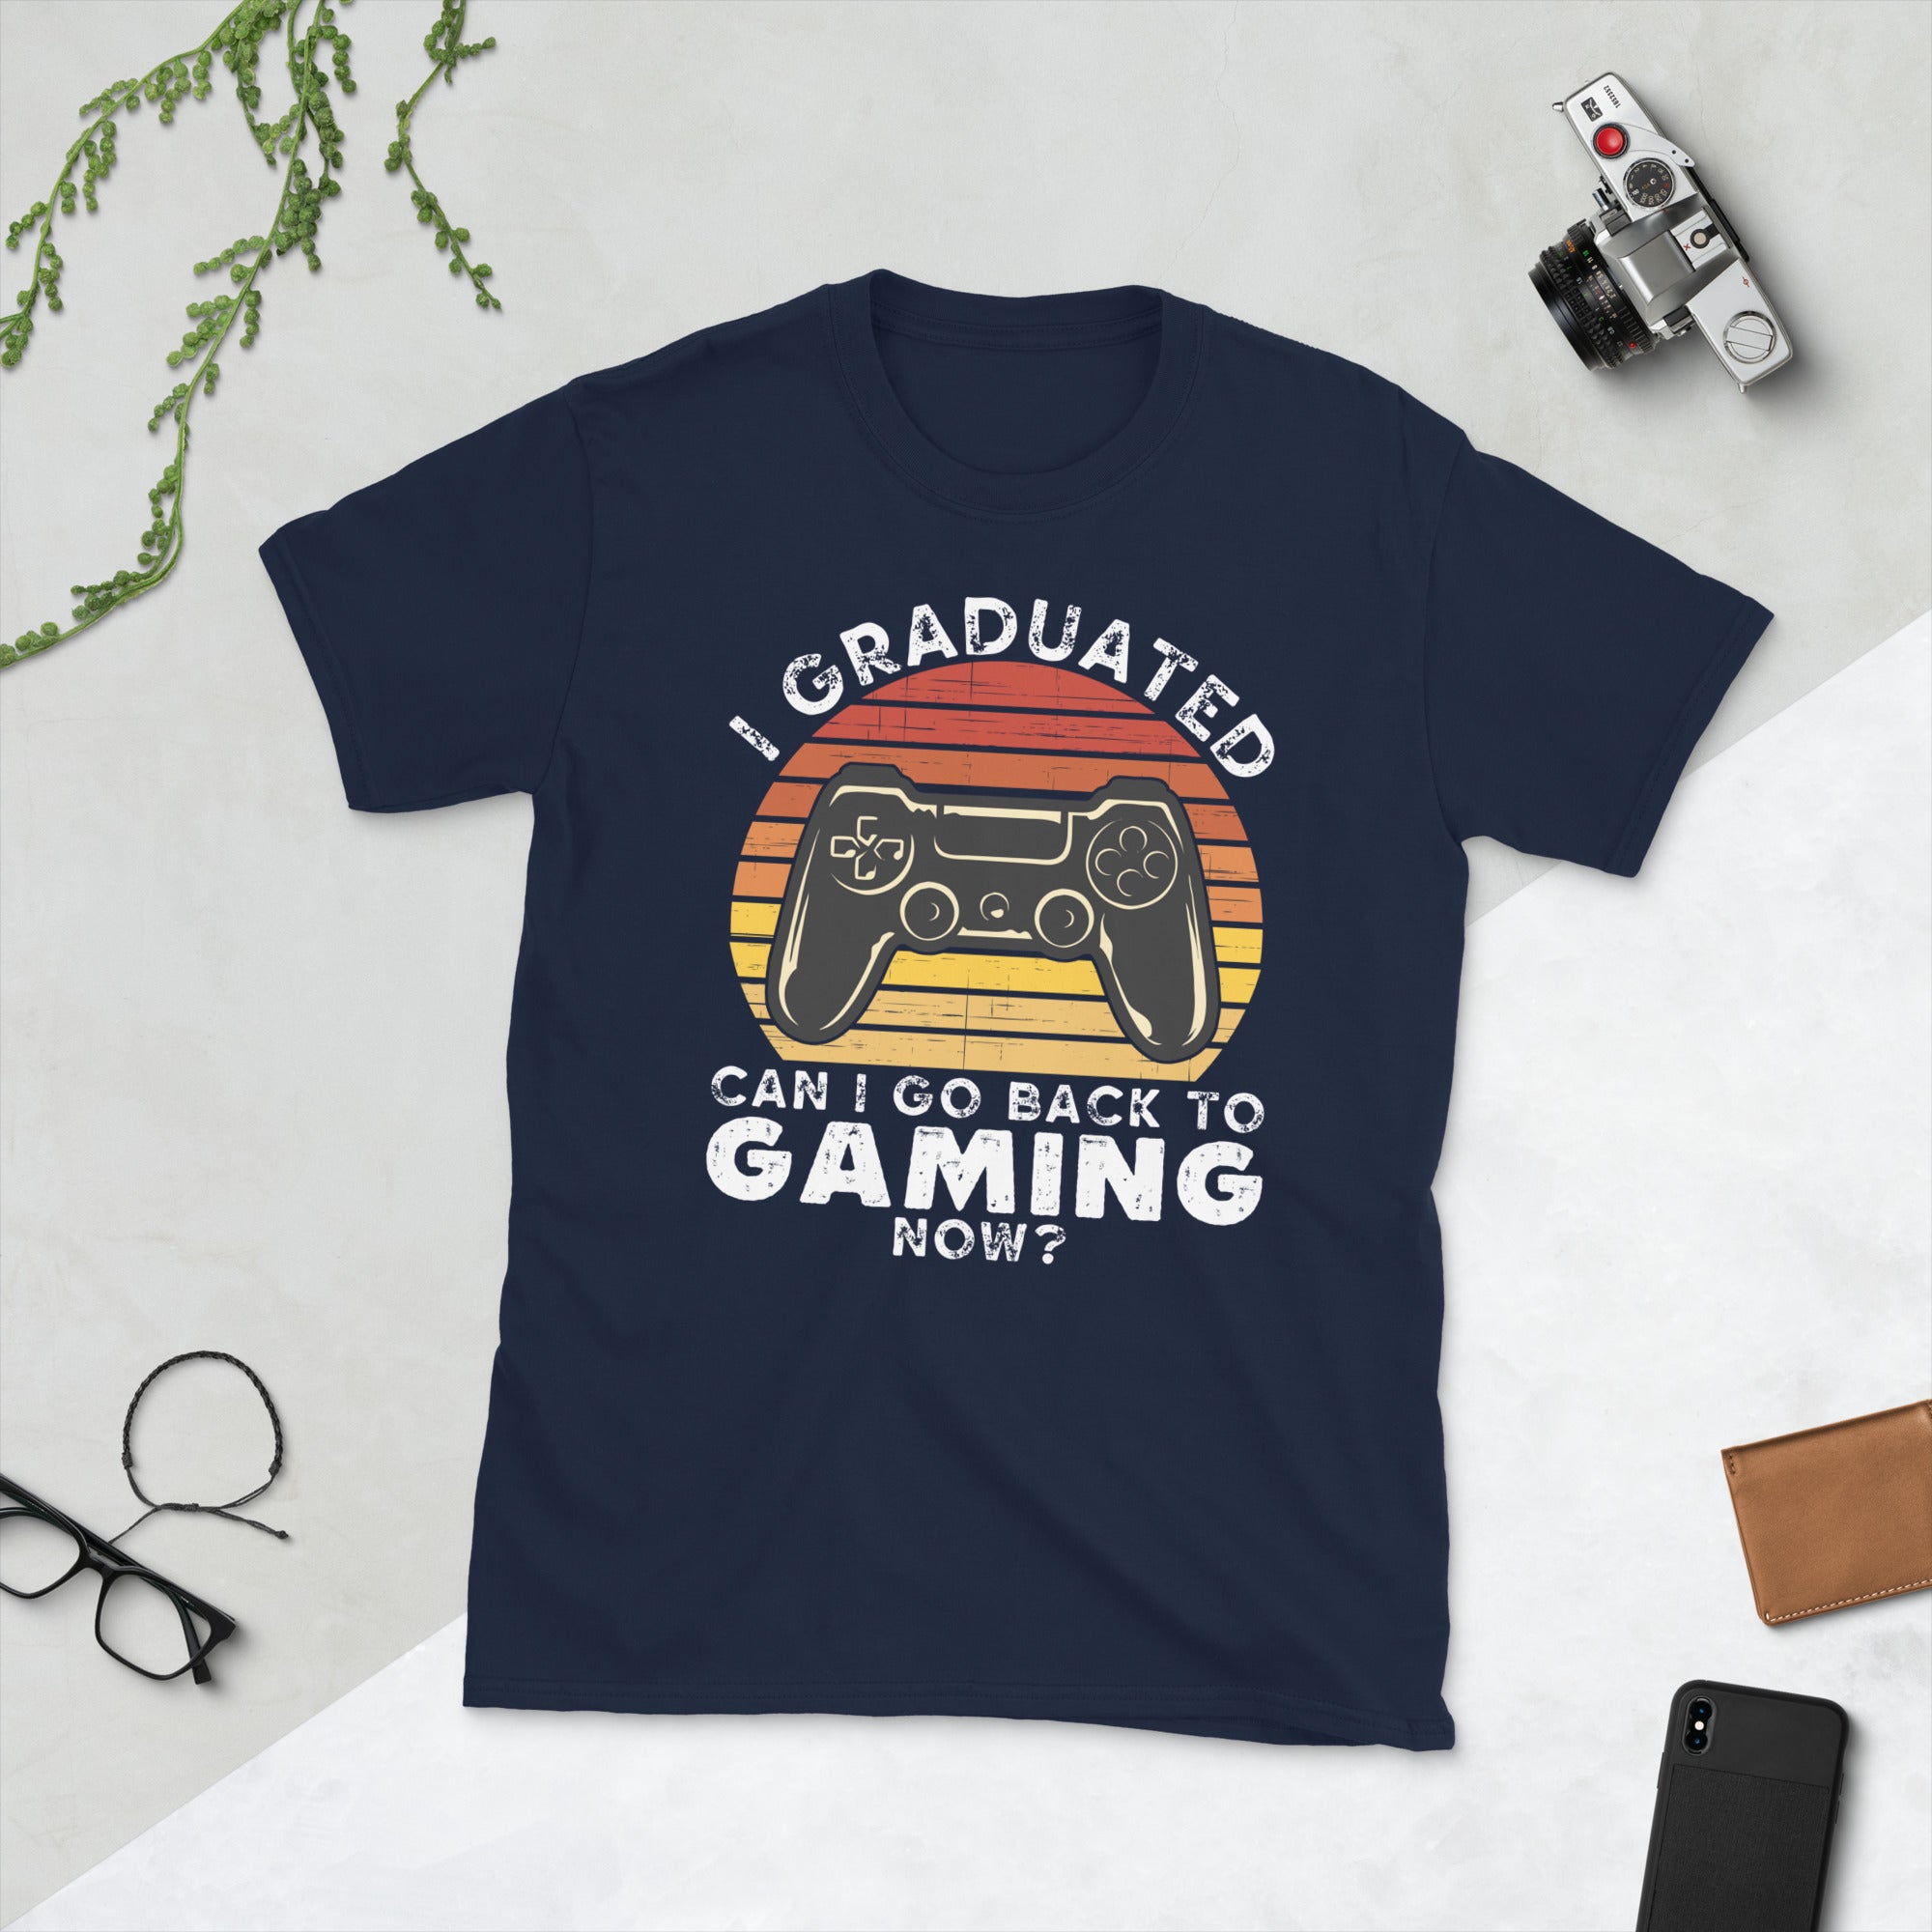 2022 Camisa de graduación divertida, Me gradué ¿Puedo volver a jugar ahora, regalos de posgrado de videojuegos, camisa de graduación retro, camiseta vintage de jugador